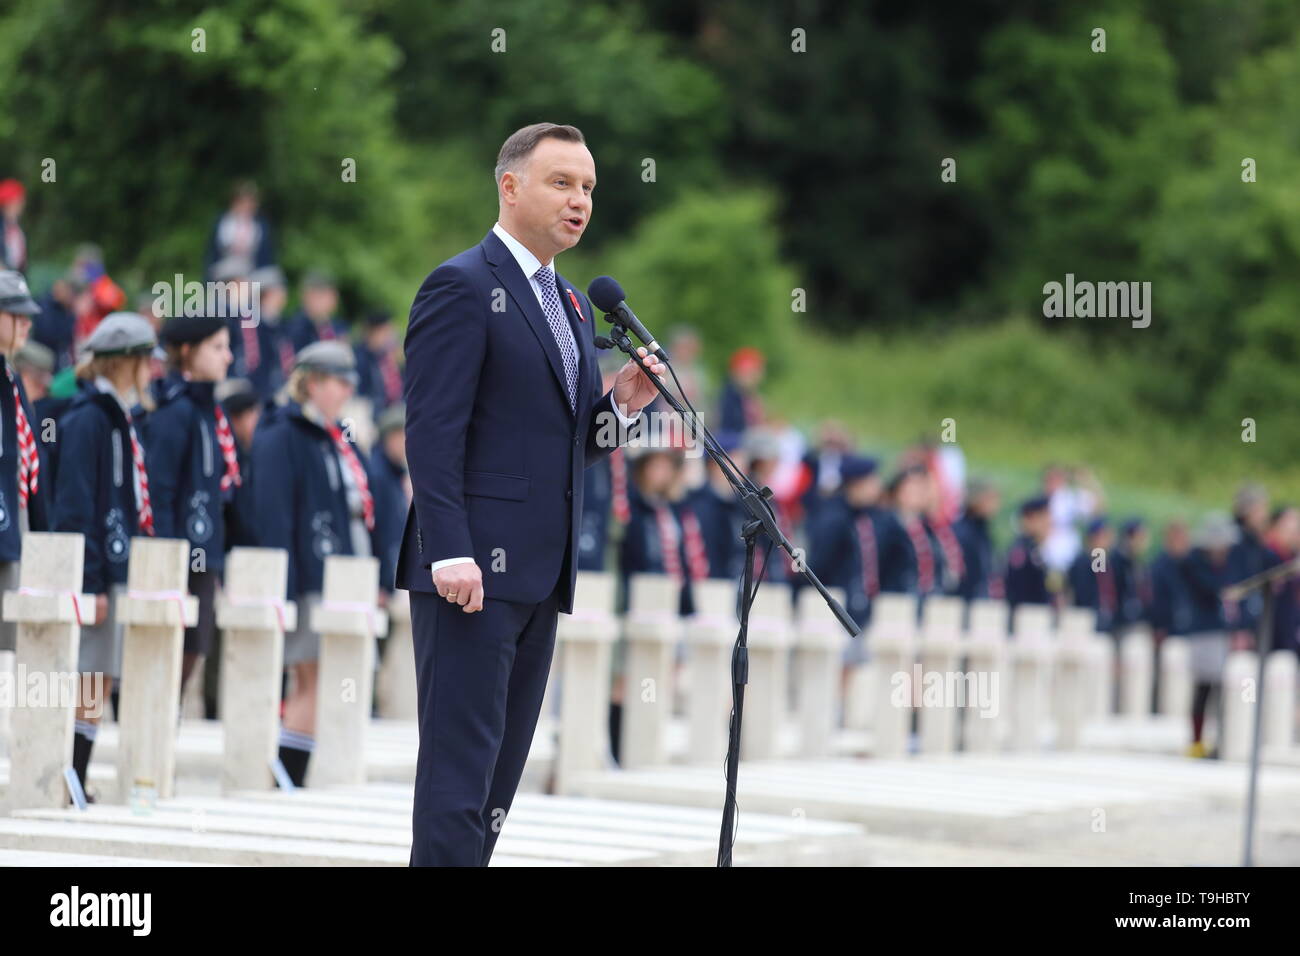 Cassino, Italia - 18 de mayo de 2019: El discurso del Presidente de la República de Polonia, Andrzej Duda en el cementerio militar polaco por el 75º aniversario de la batalla de Montecassino Foto de stock